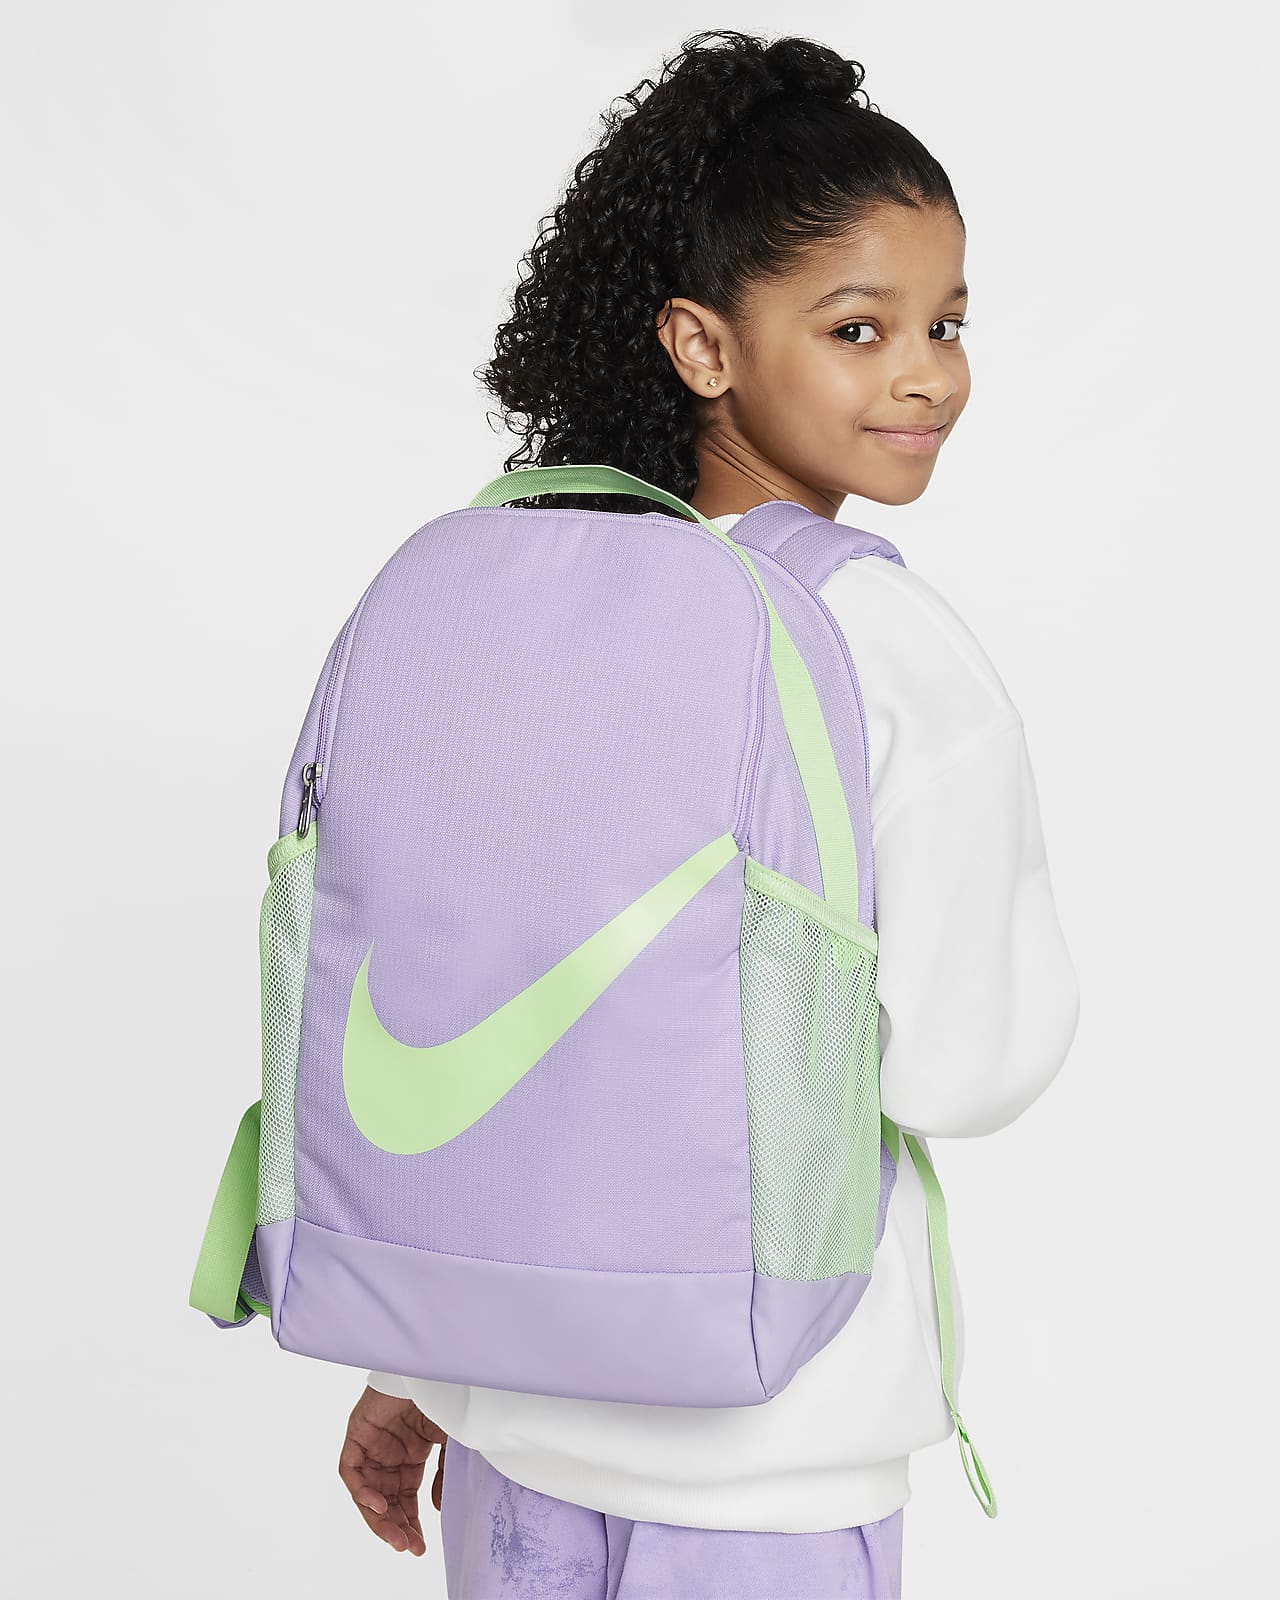 Nike Brasilia 兒童背包 (18 公升)